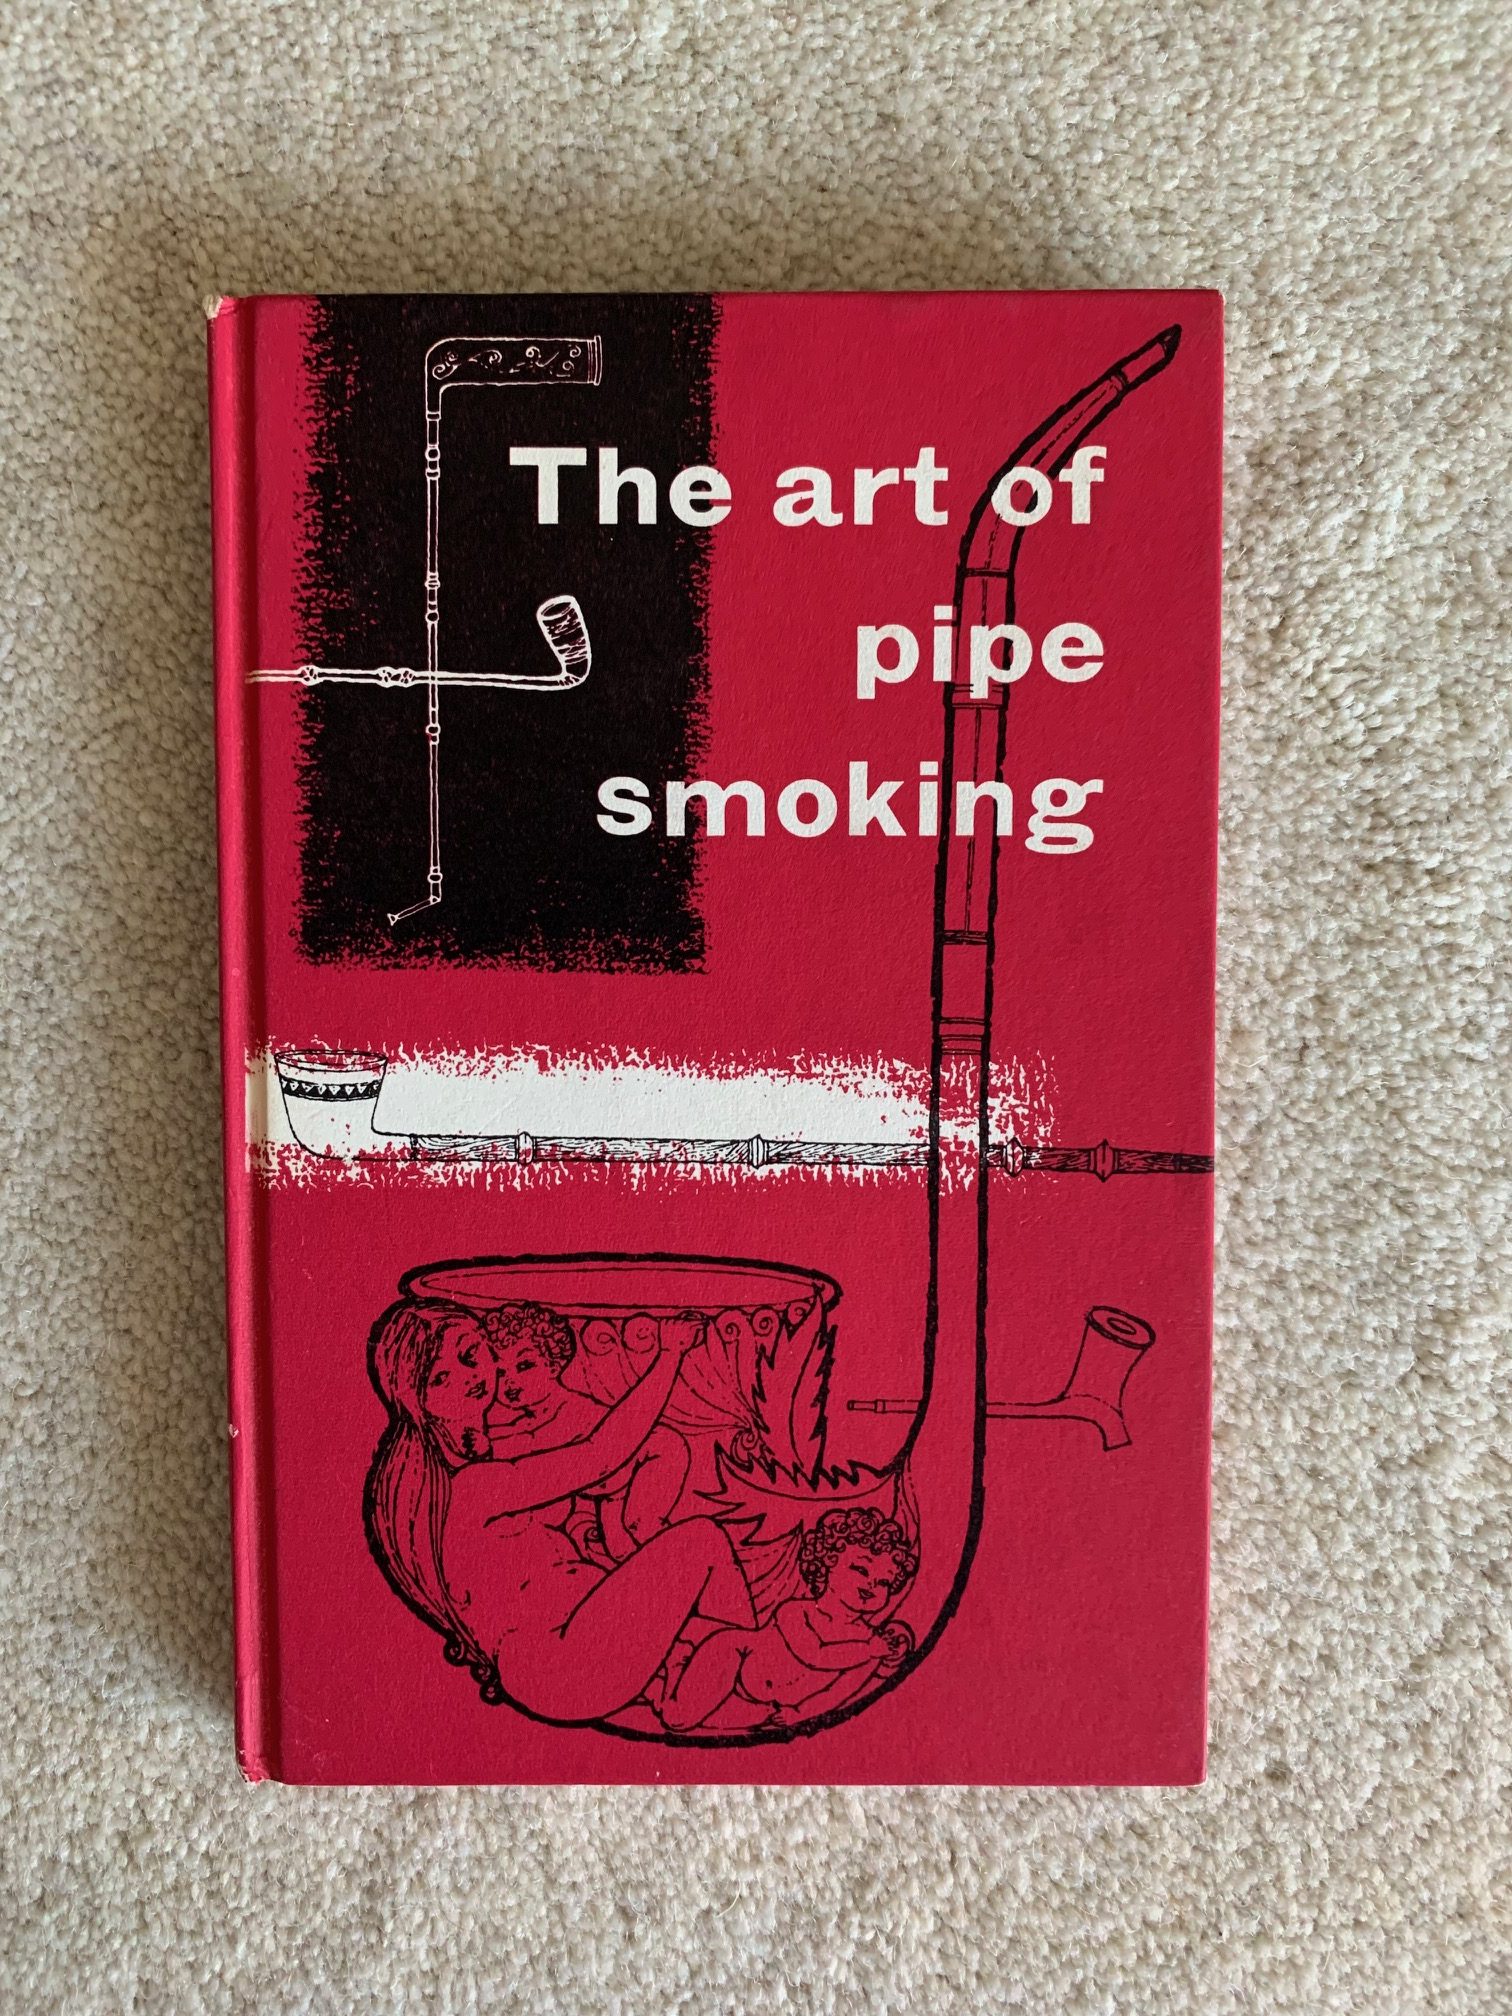 The Art of Pipe Smoking - Joaquin Verdaguer Image